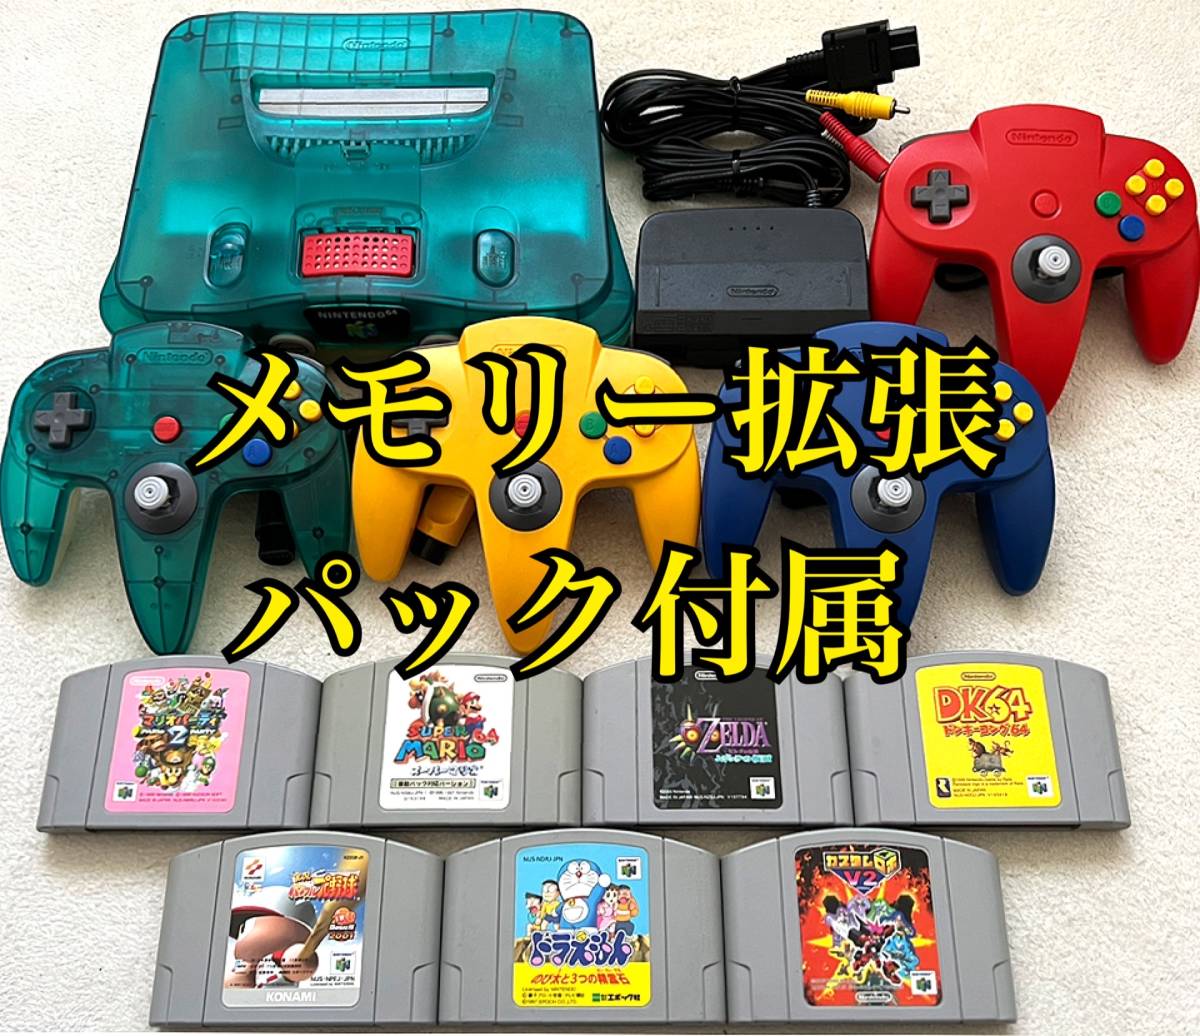 Nintendo ドンキーコングメモリー拡張パック、ポケモンスタジアム2